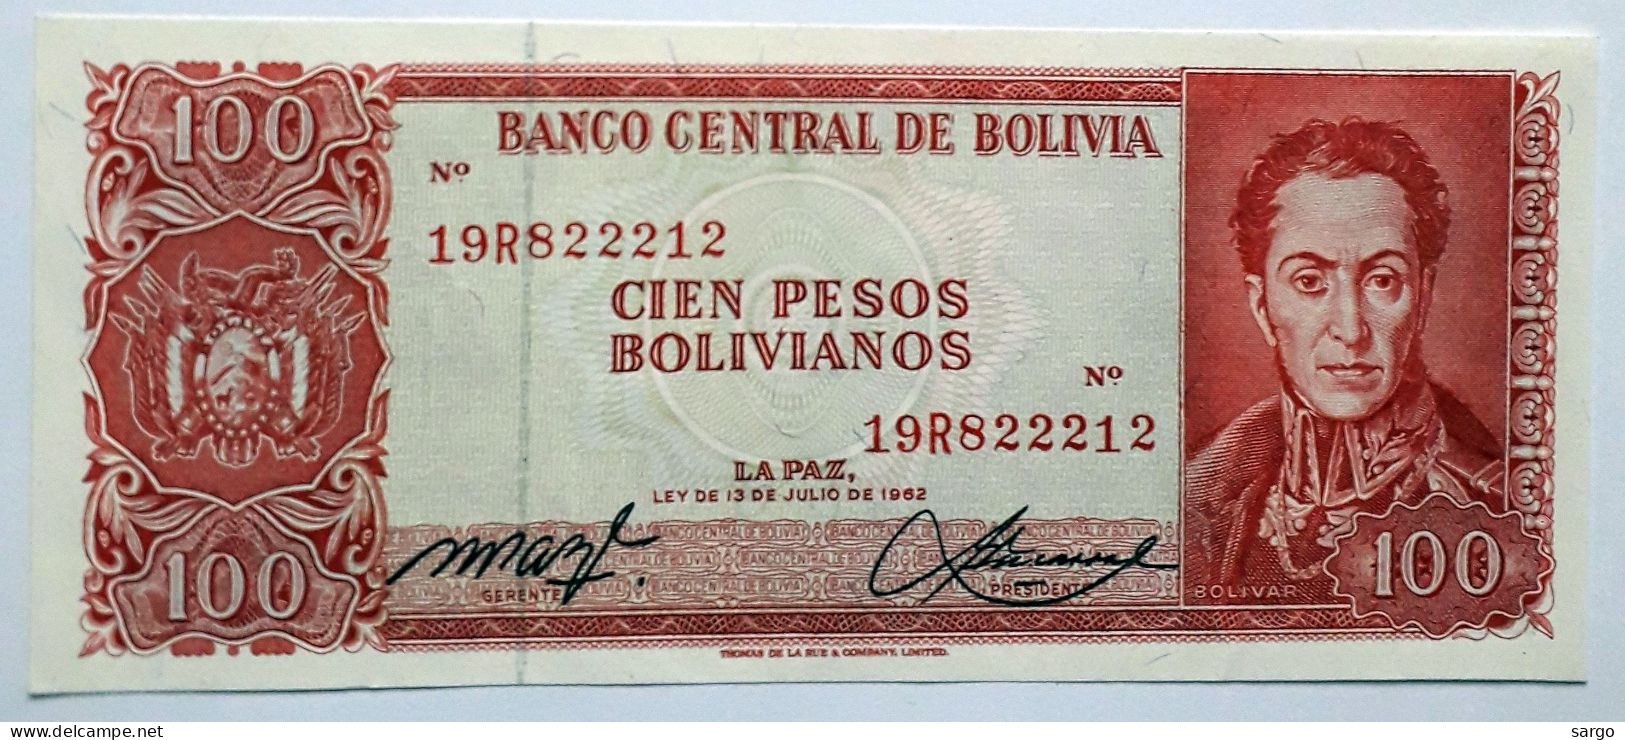 BOLIVIA - 100 PESOS BOLIVIANOS  - P 164  (1962) - UNC - BANKNOTES - PAPER MONEY - CARTAMONETA - - Bolivien